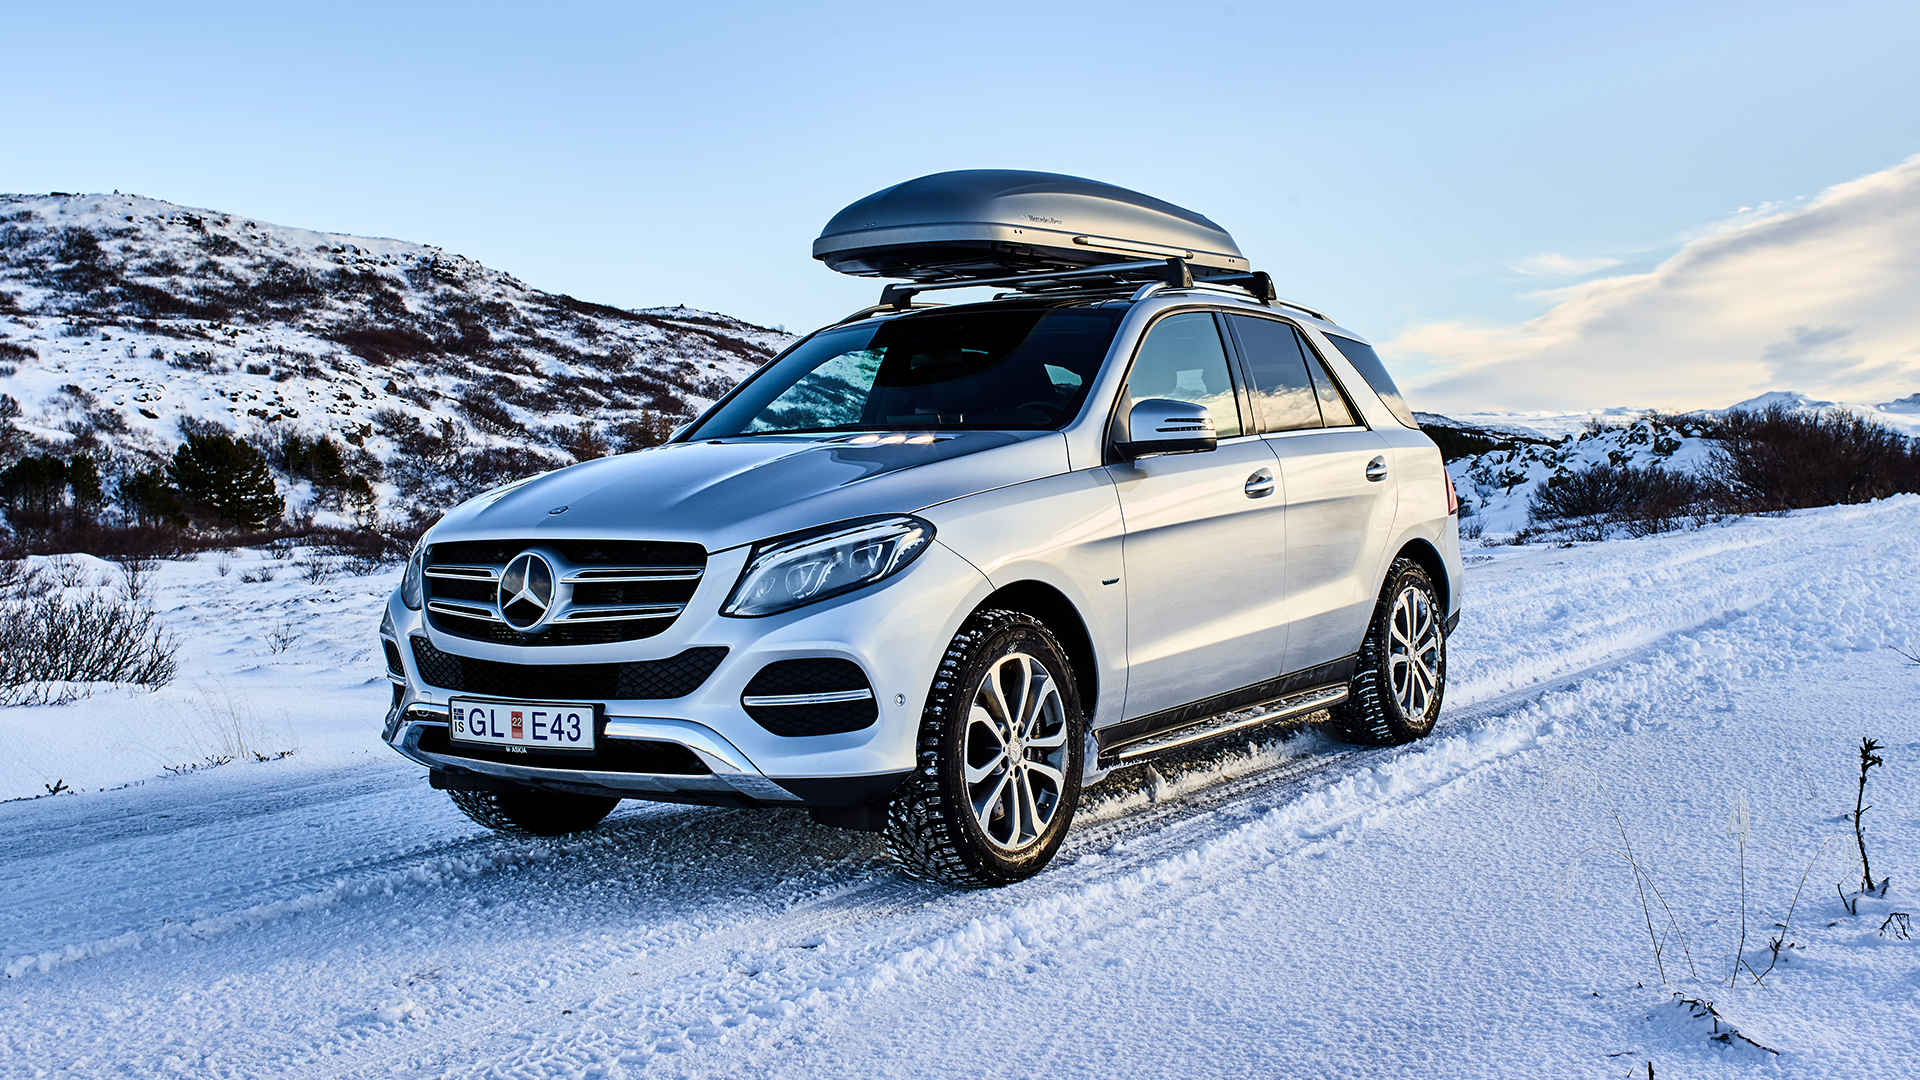 Mercedes-Benz bílasýning á Akureyri